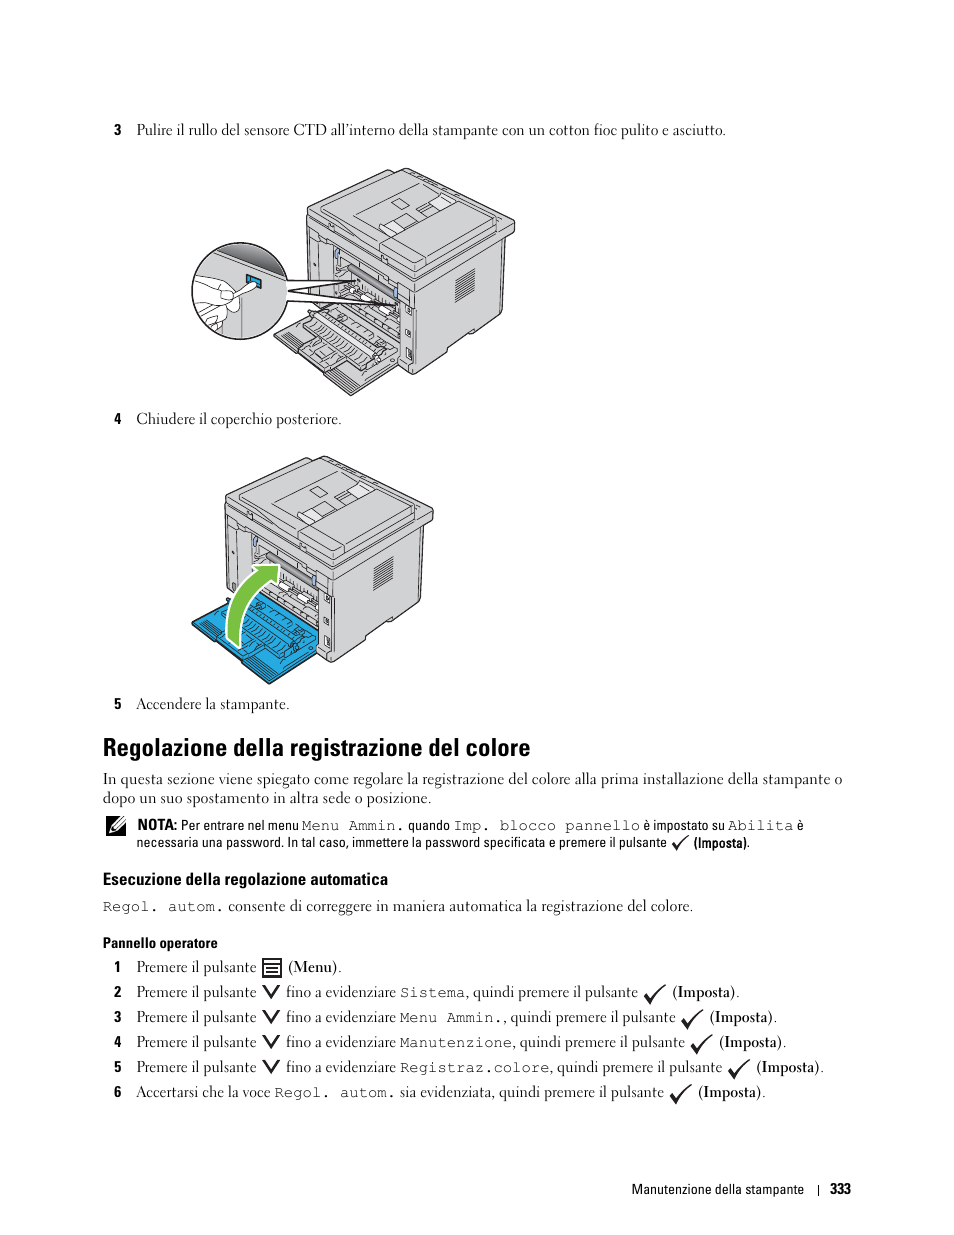 Regolazione della registrazione del colore, Esecuzione della regolazione automatica | Dell C1765NFW MFP Laser Printer Manuale d'uso | Pagina 335 / 390